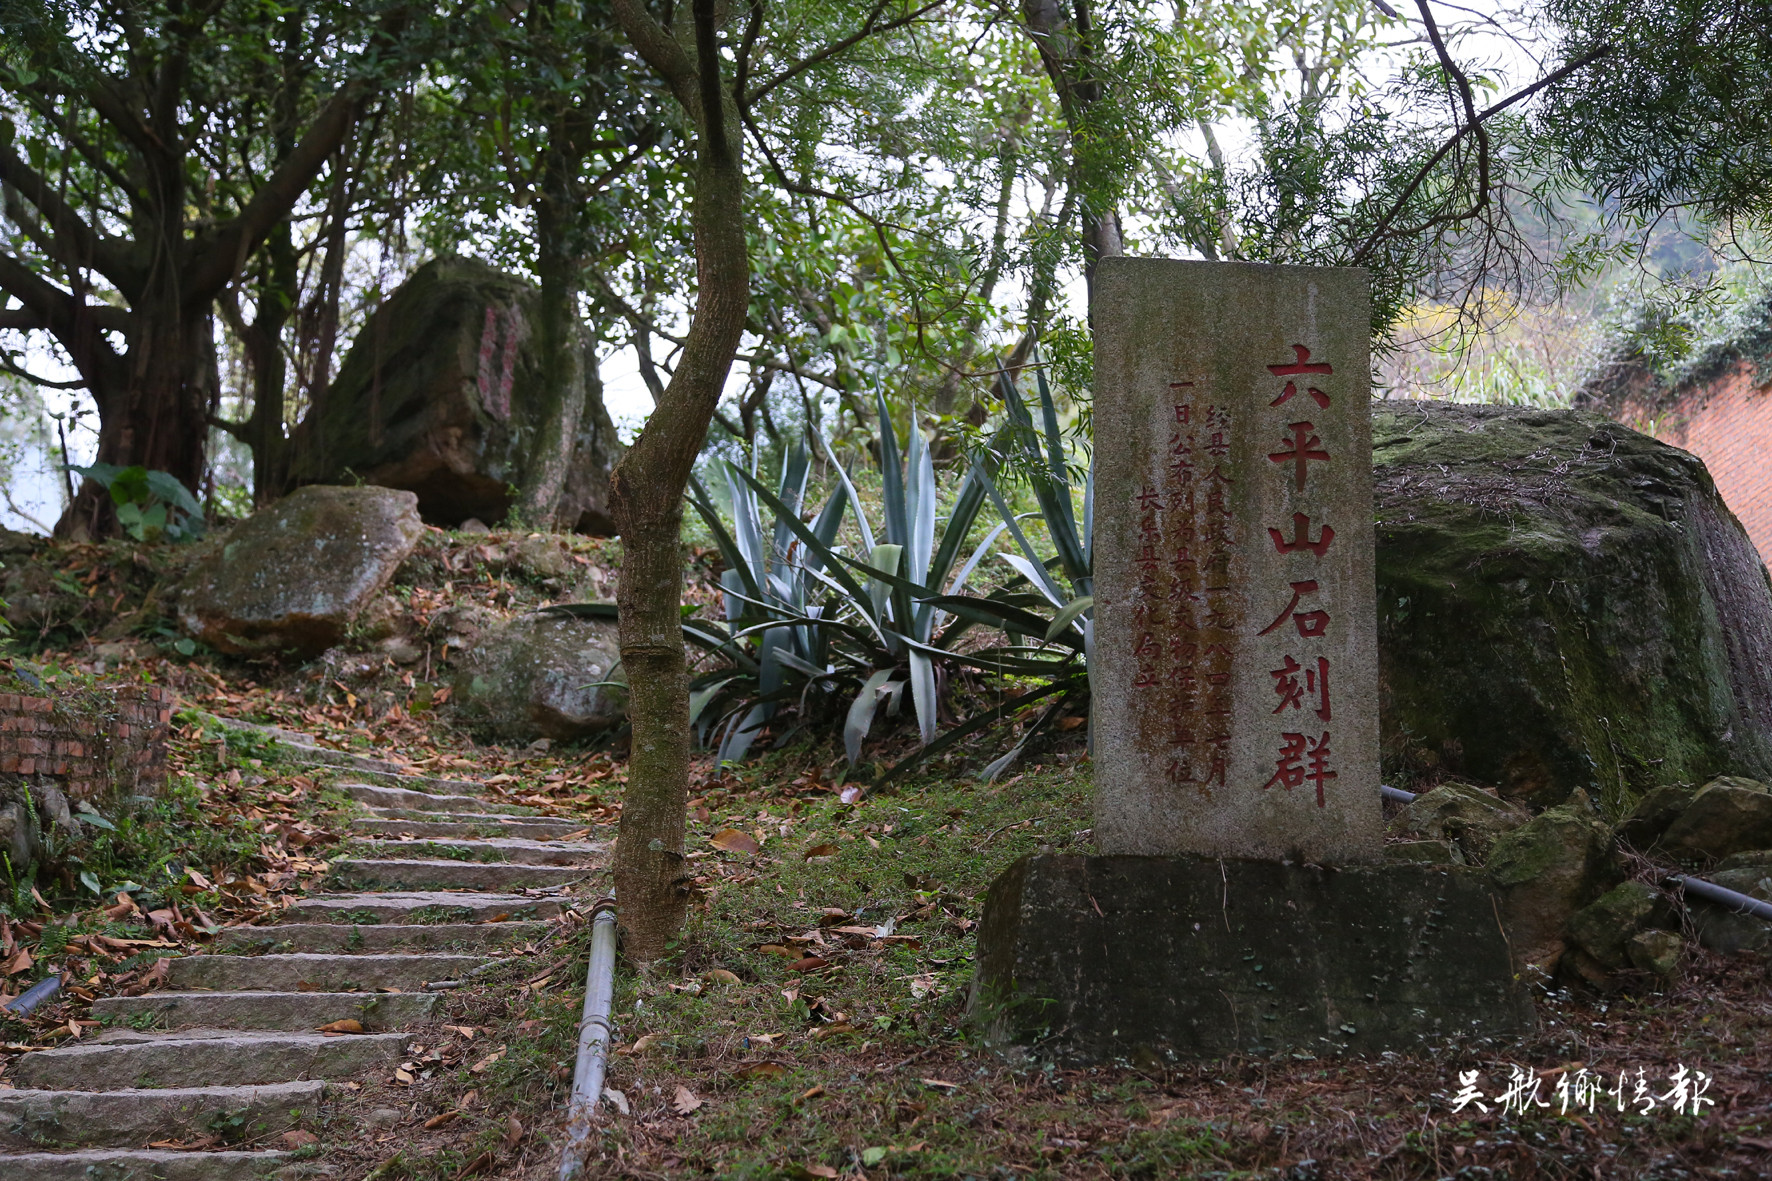 传承吴航历史文脉 重现城市山水活力 六平山公园启动景观提升工程